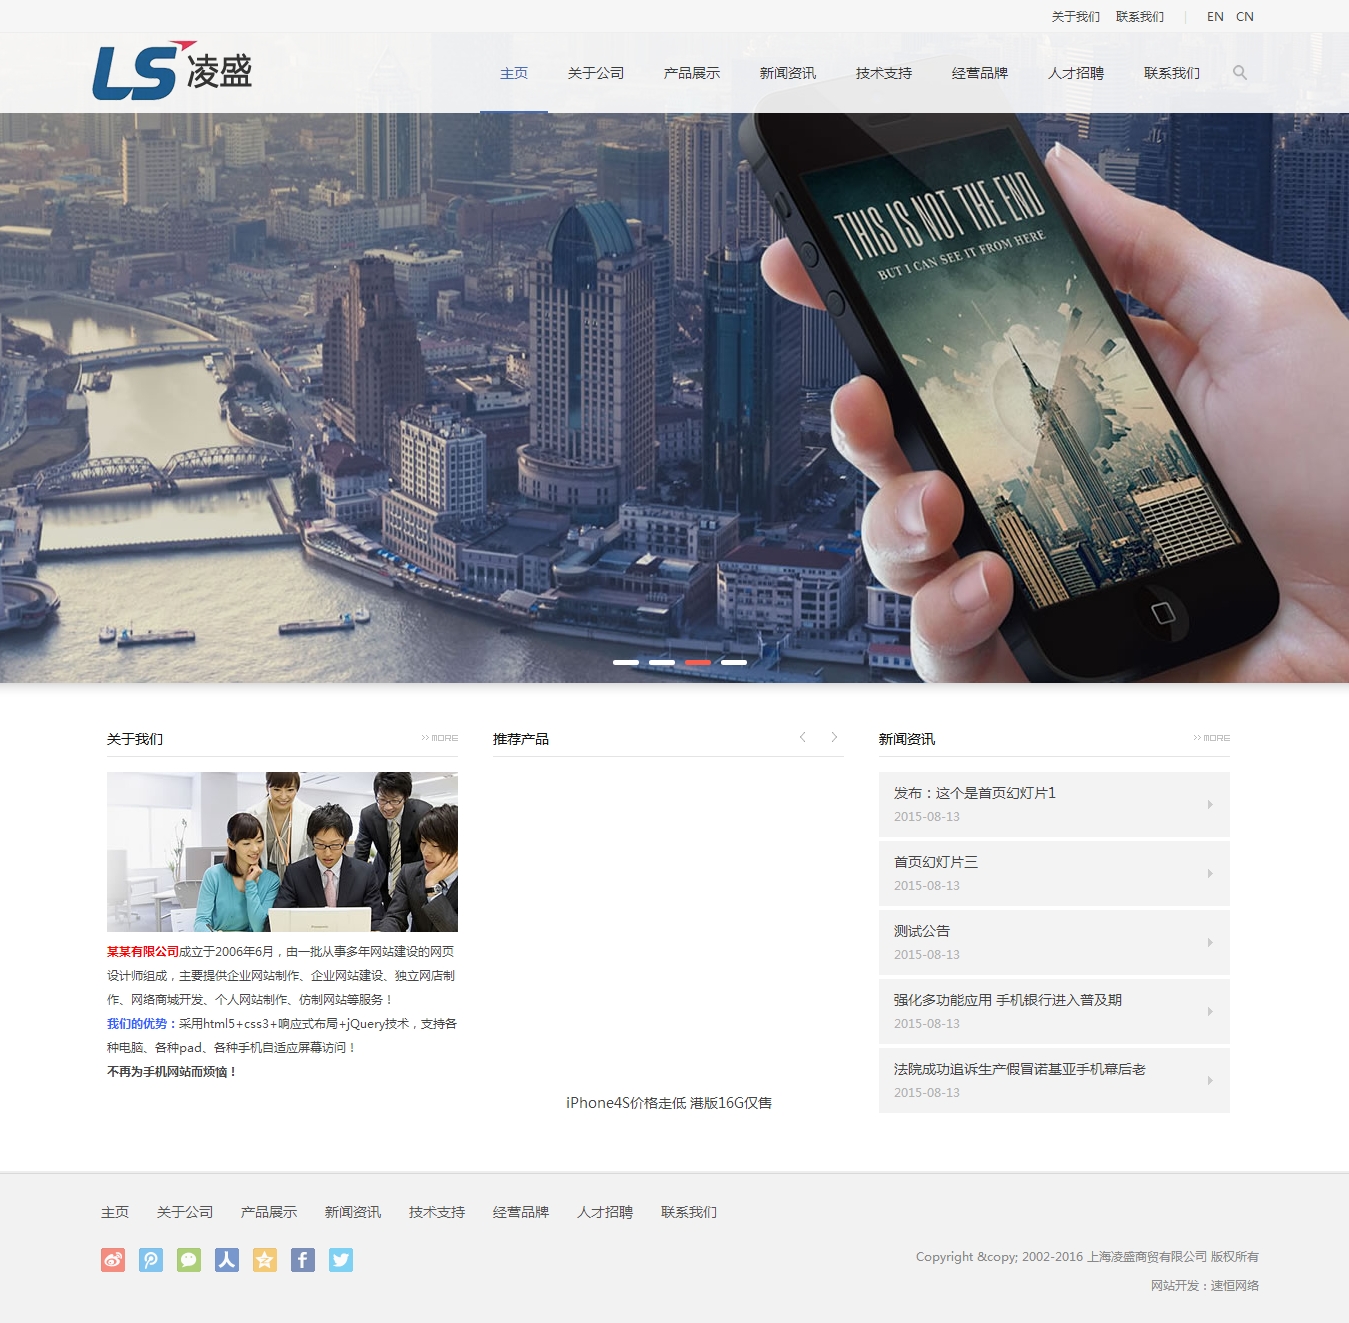 上海凌盛商貿有限公司網站制作案例